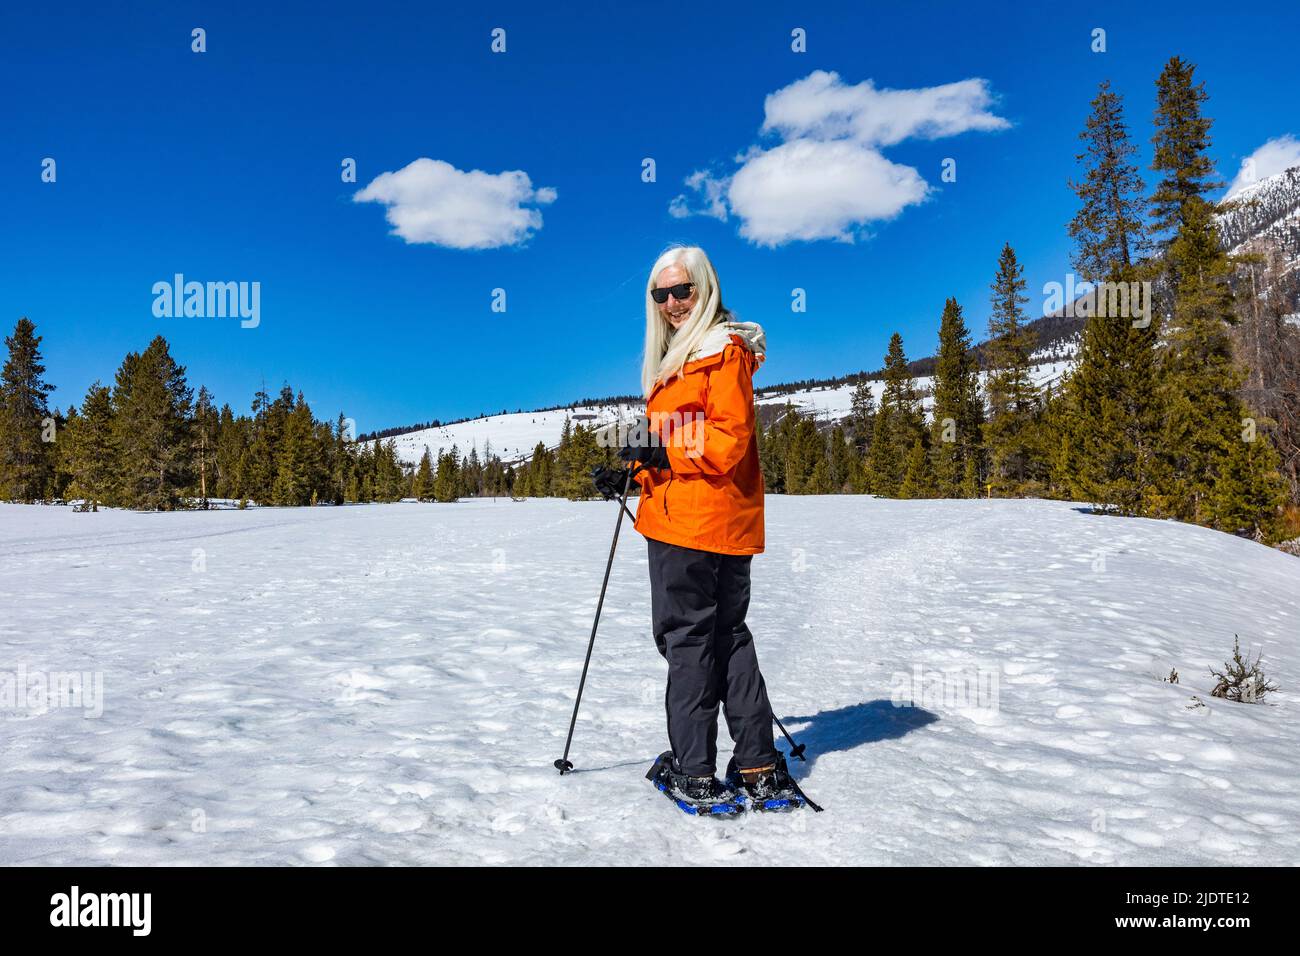 États-Unis, Idaho, Ketchum, femme blonde senior raquettes dans un paysage enneigé Banque D'Images